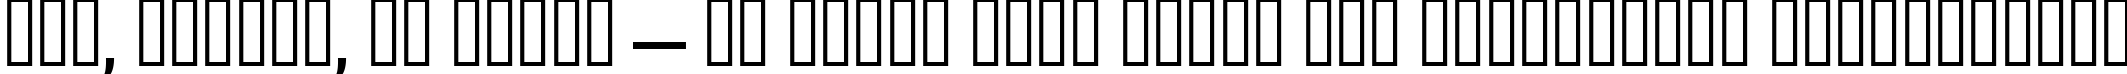 Пример написания шрифтом Antigoni Med текста на украинском